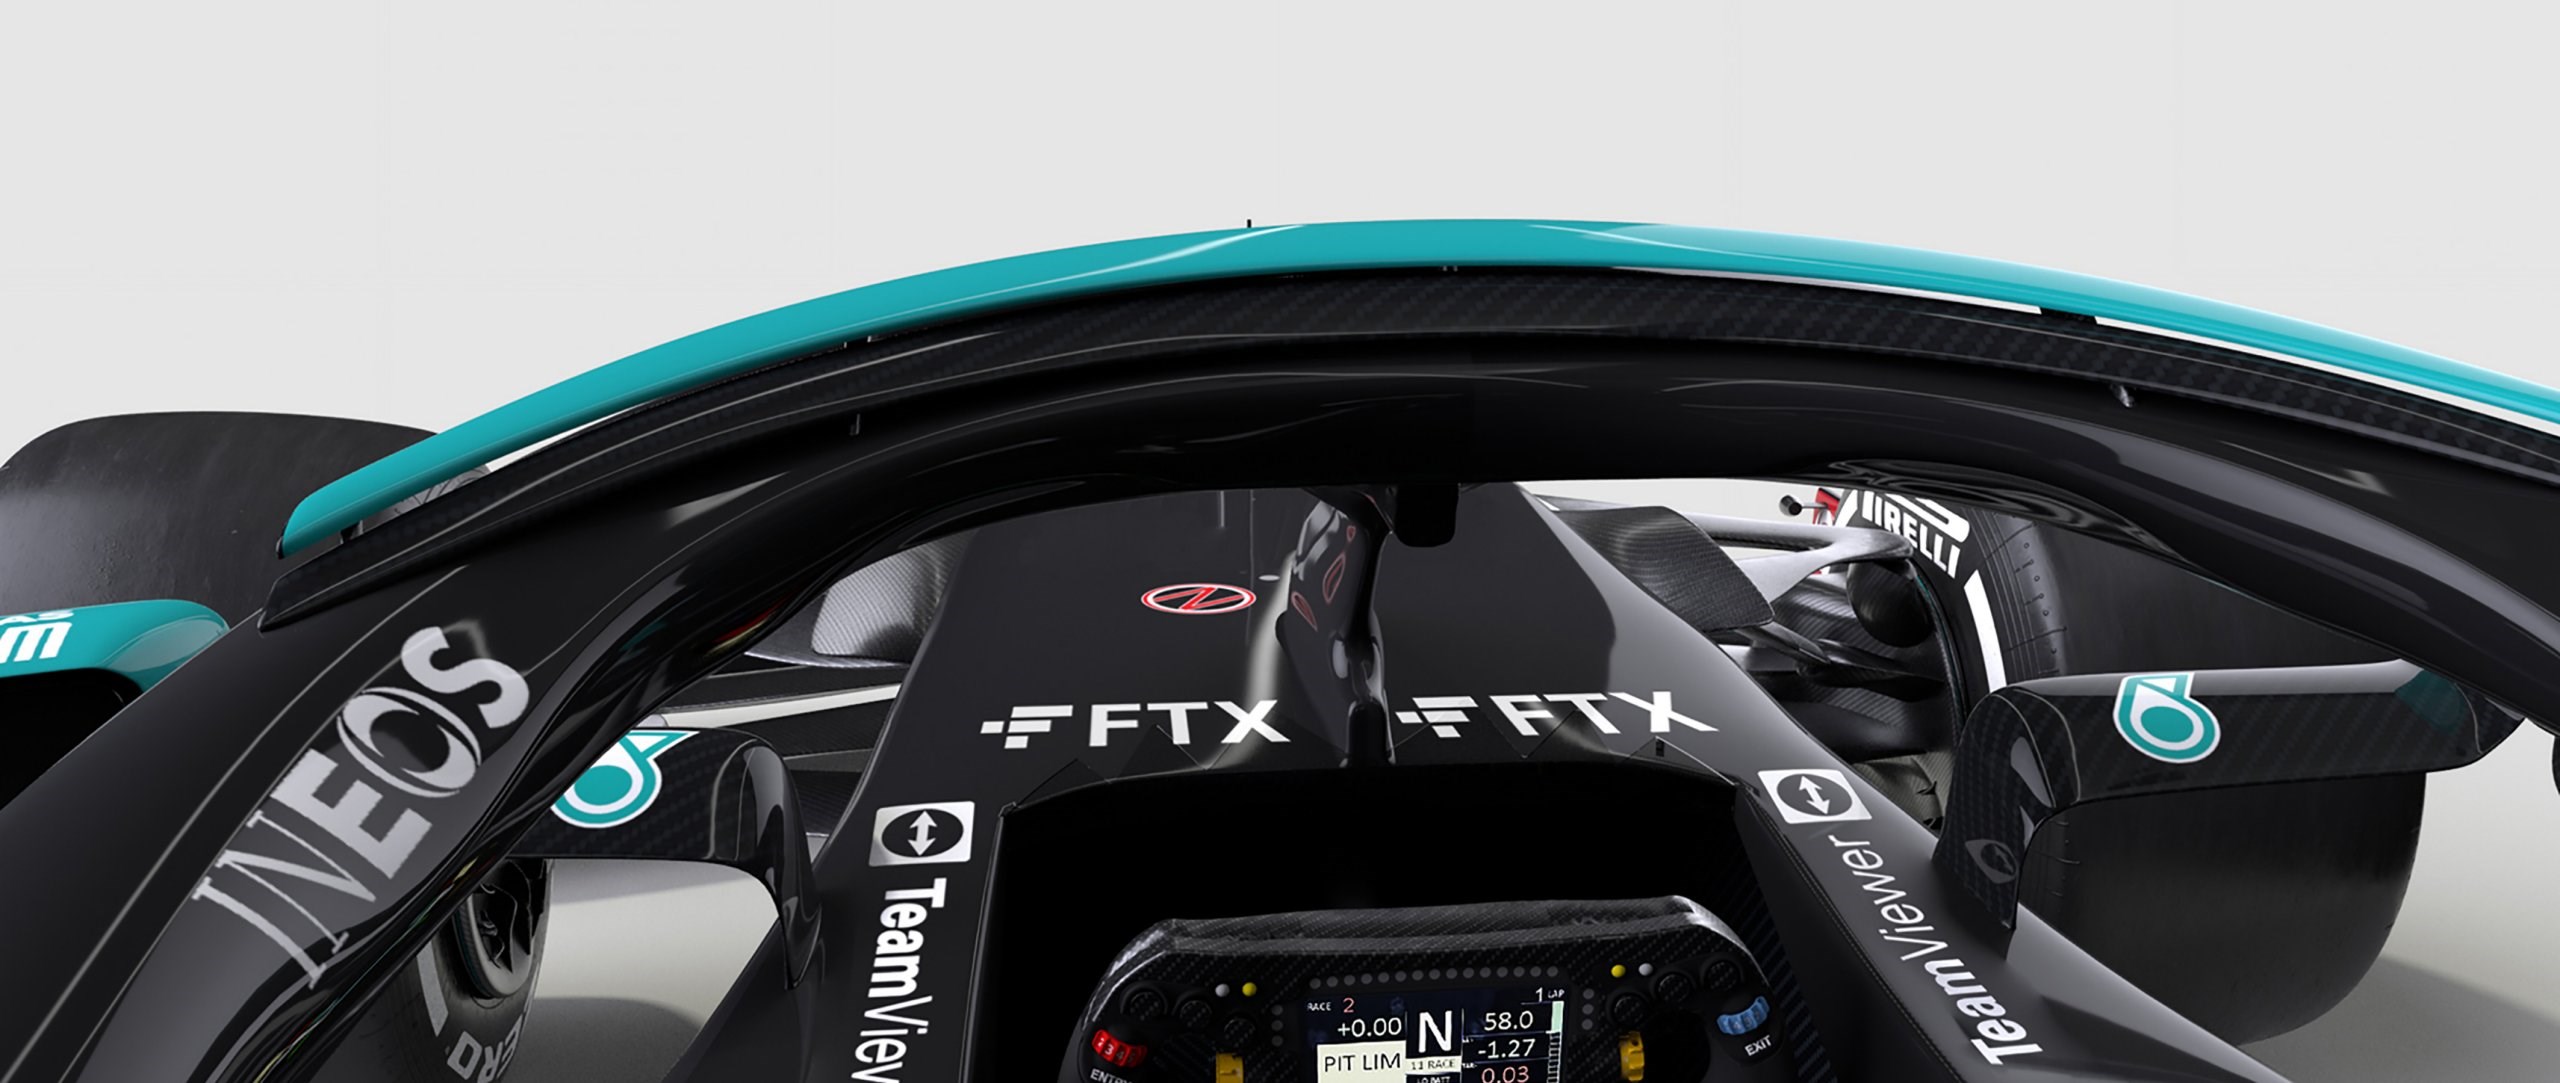 Mercedes, F1 araçlarındaki FTX logosunu kaldırdığını açıkladı